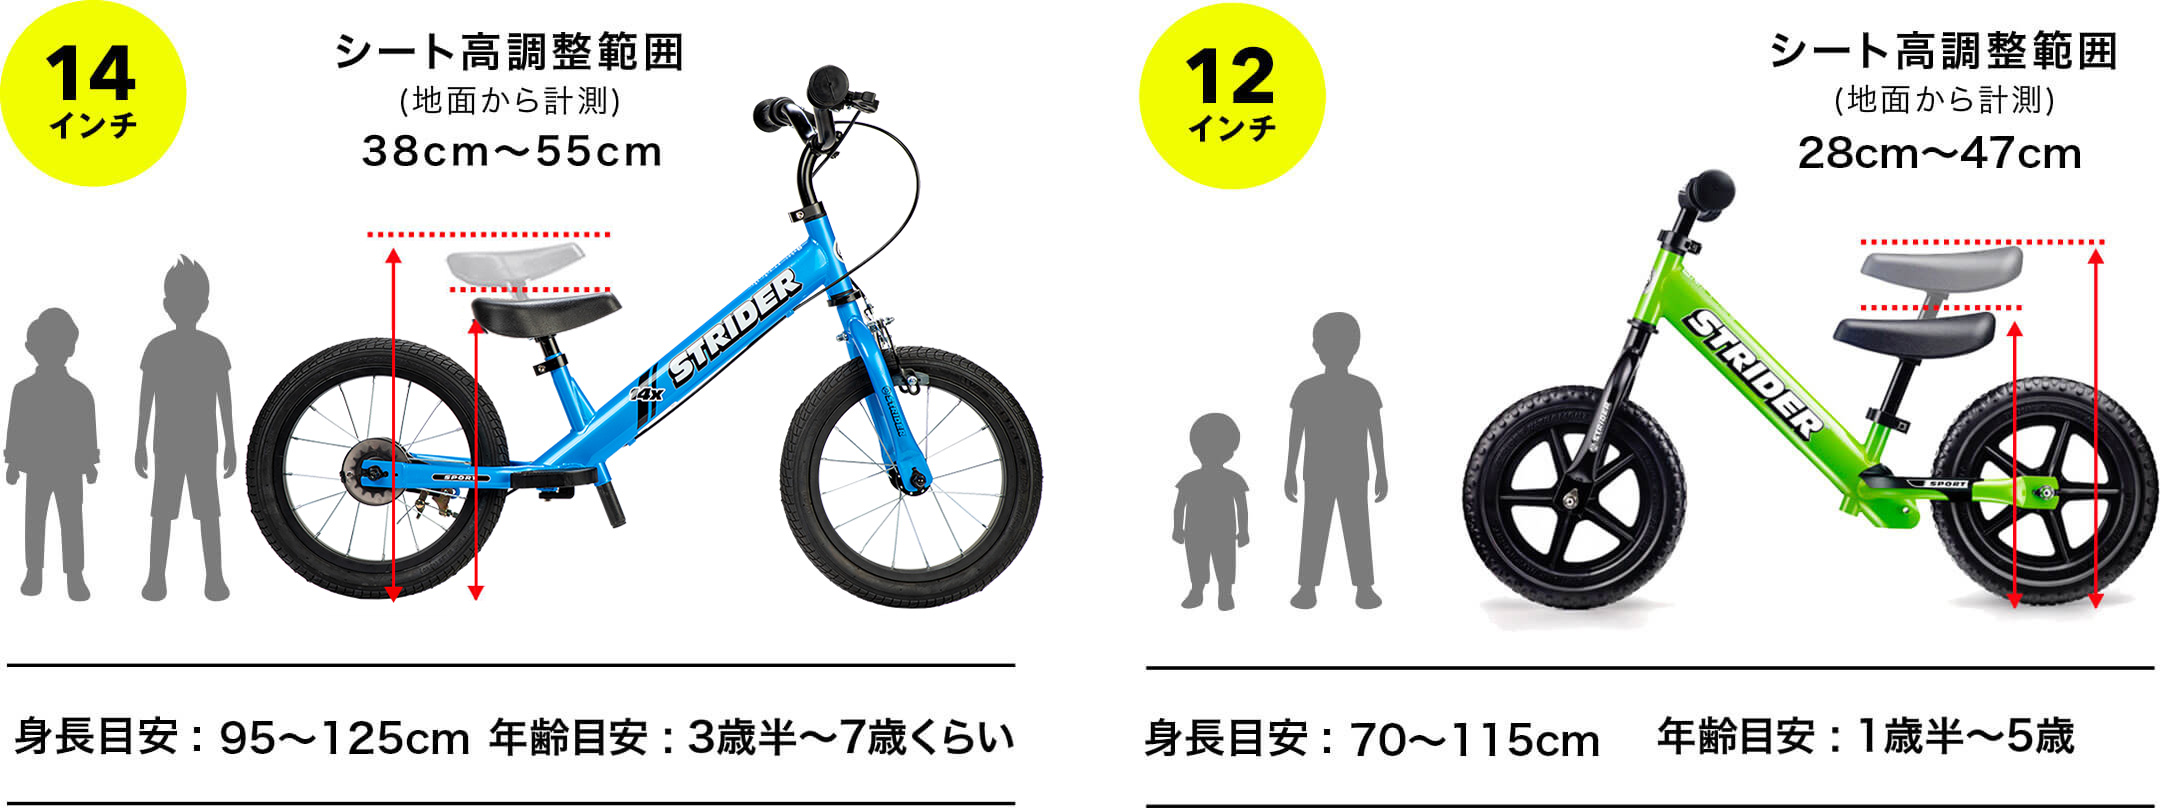 キッズ自転車ストライダー×神山隆二 モデルが登場